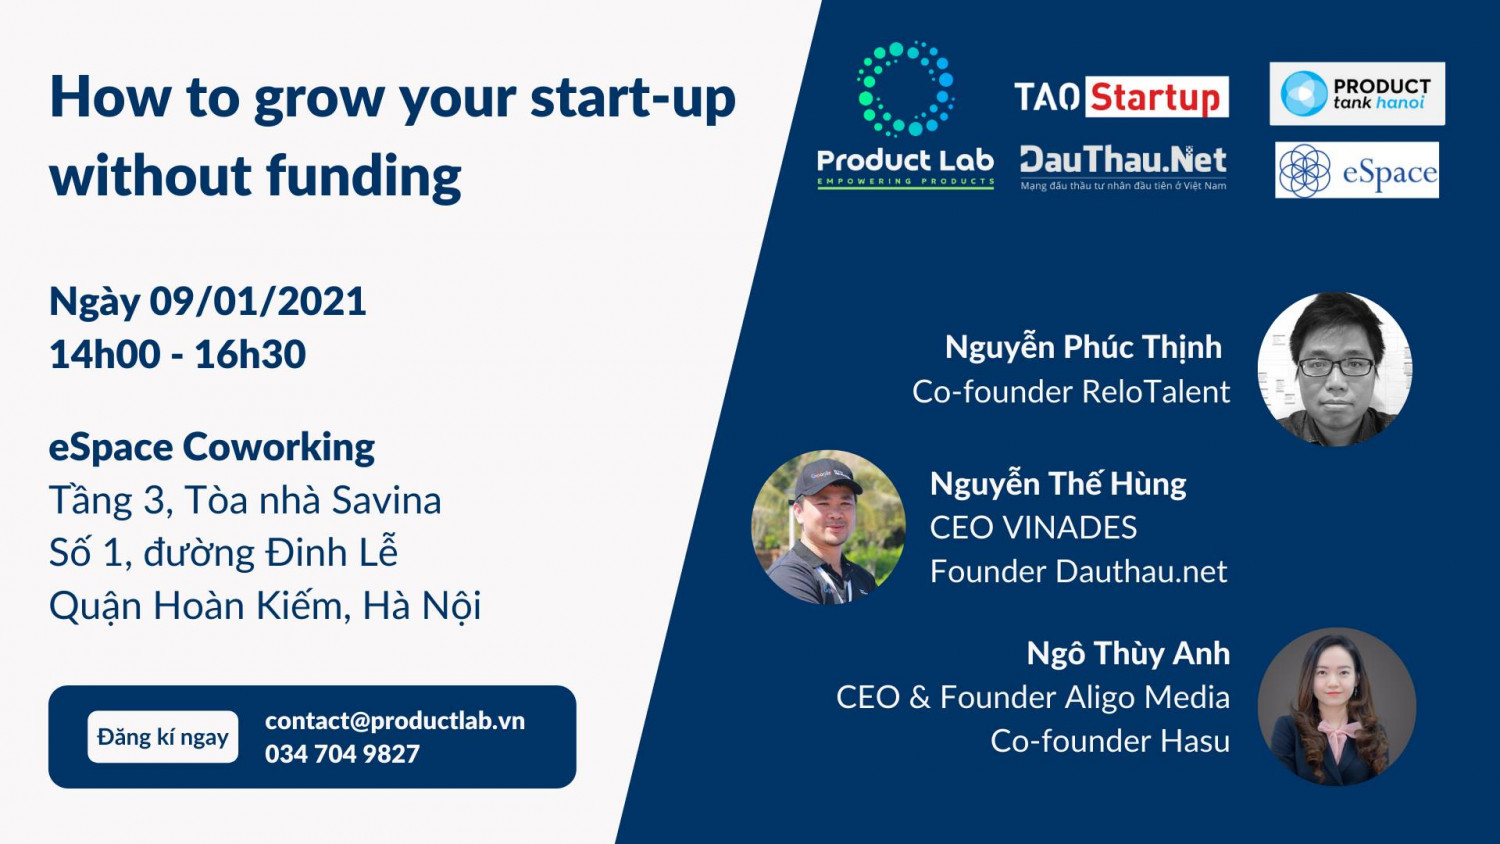 DauThau.Net tài trợ sự kiện dành cho cộng đồng start-up do Product Lab tổ chức